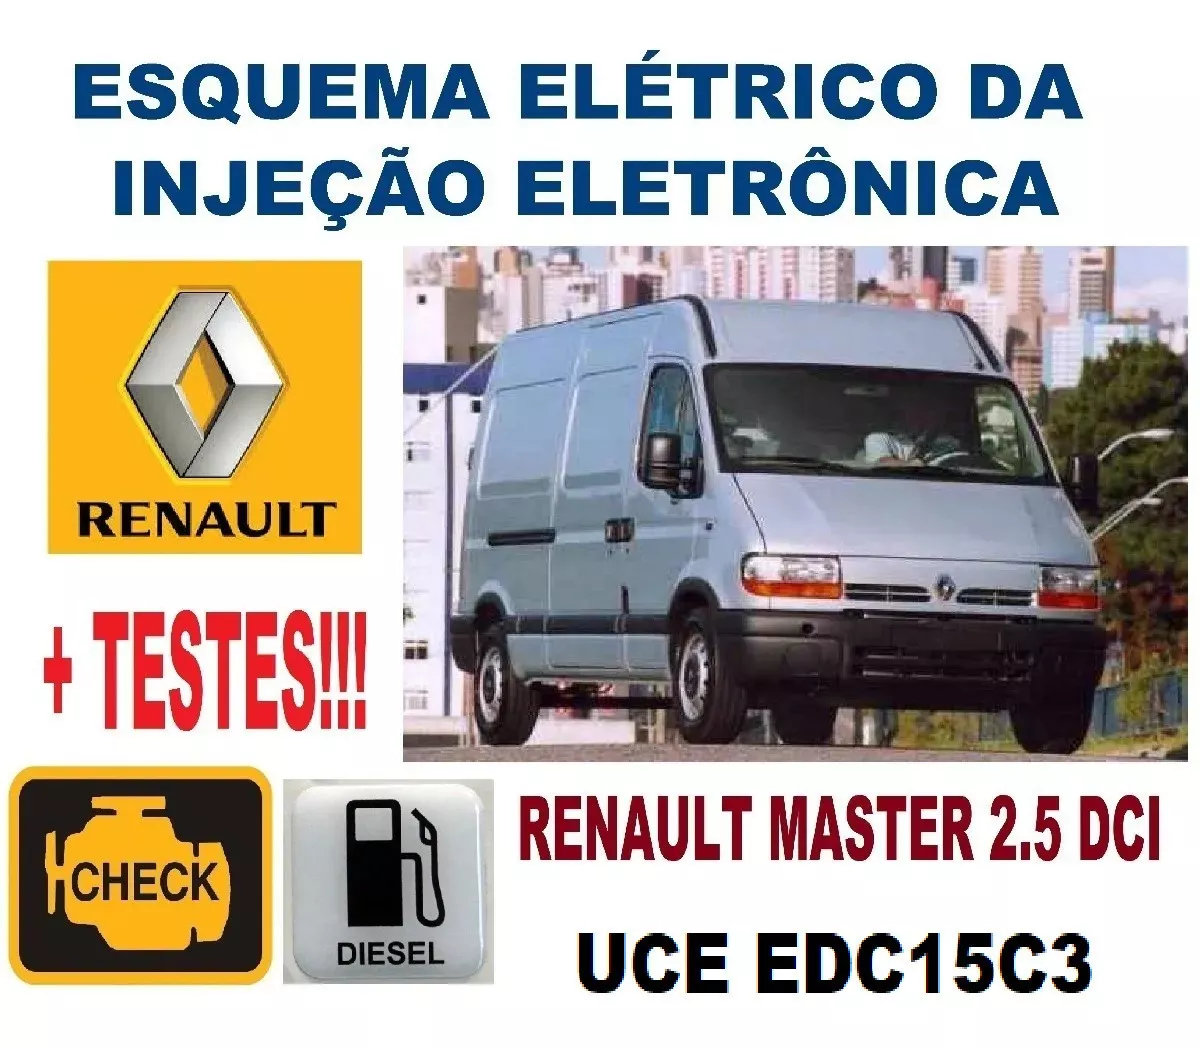 Esquema Elétrico Injeção Master 2.5 Dci Edc15c3 + Testes